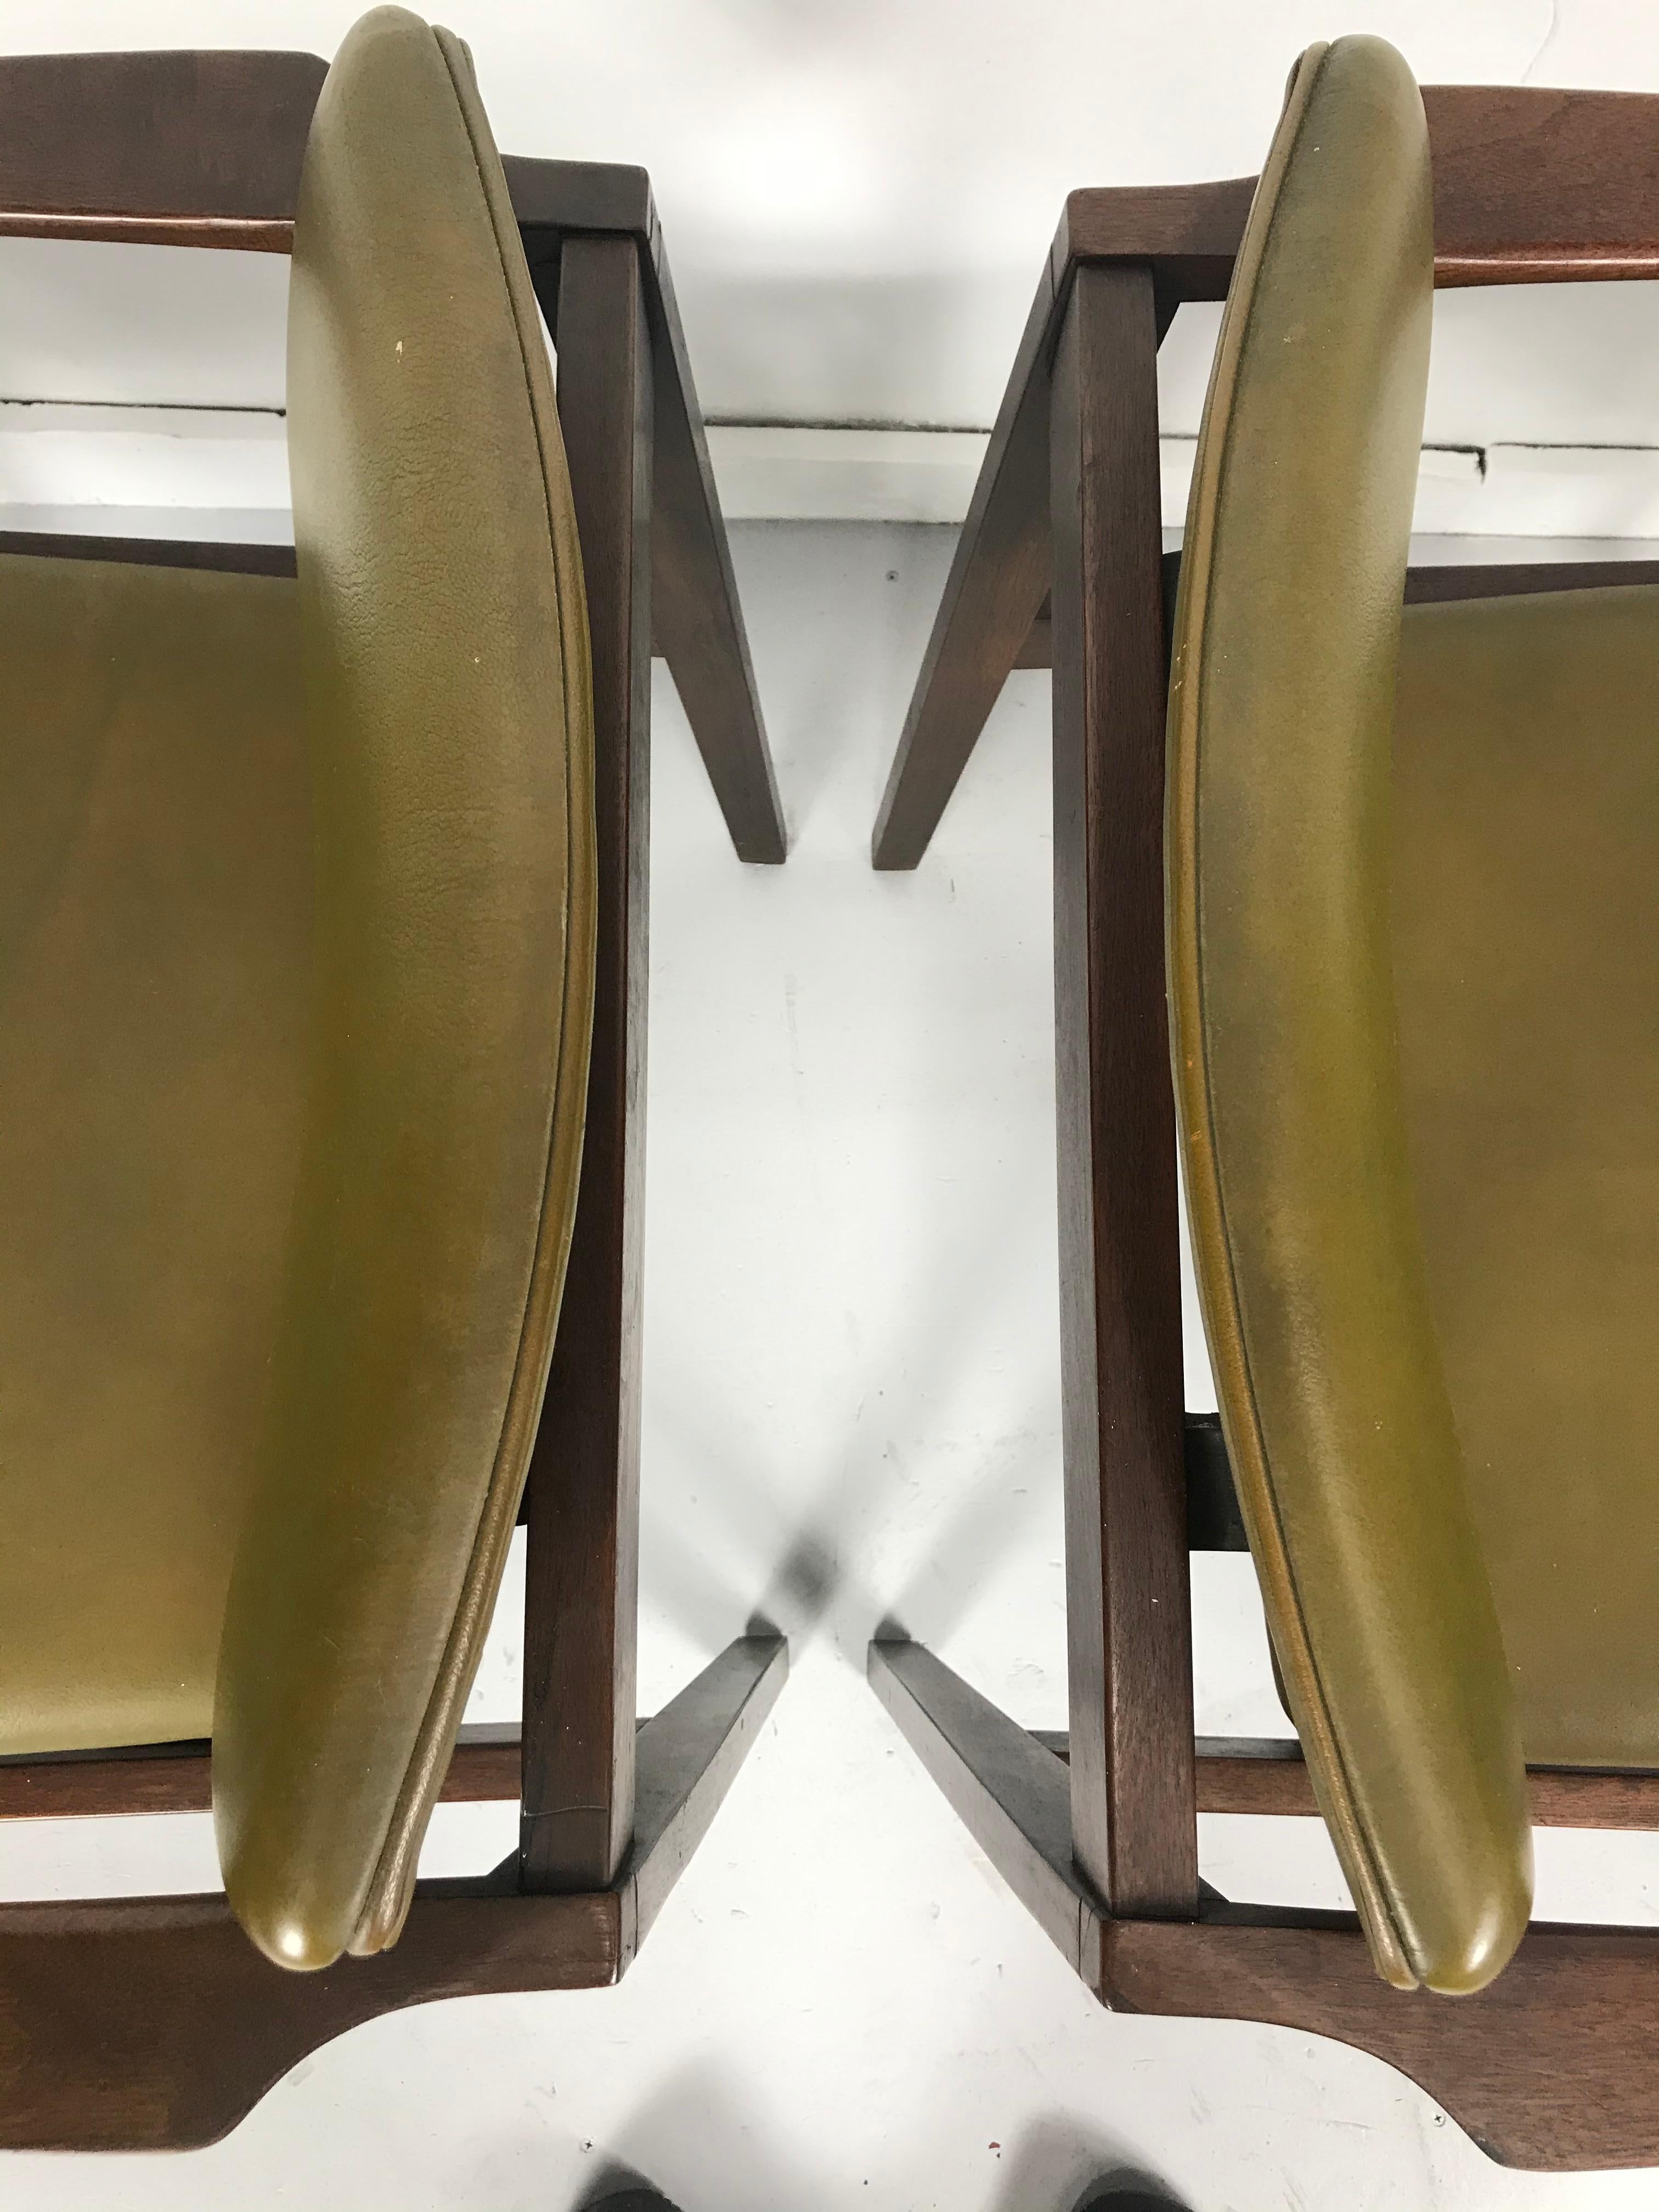 Atemberaubende Paar Stow Davis geschnitzt Nussbaum Lounge-Stühle, klassisch modernistisches Design, sehr komfortabel, behalten ursprünglichen senfgrünen Naugahyde schwimmenden Sitz und Rücken, auch behält ursprünglichen Stow Davis Metall-Label.